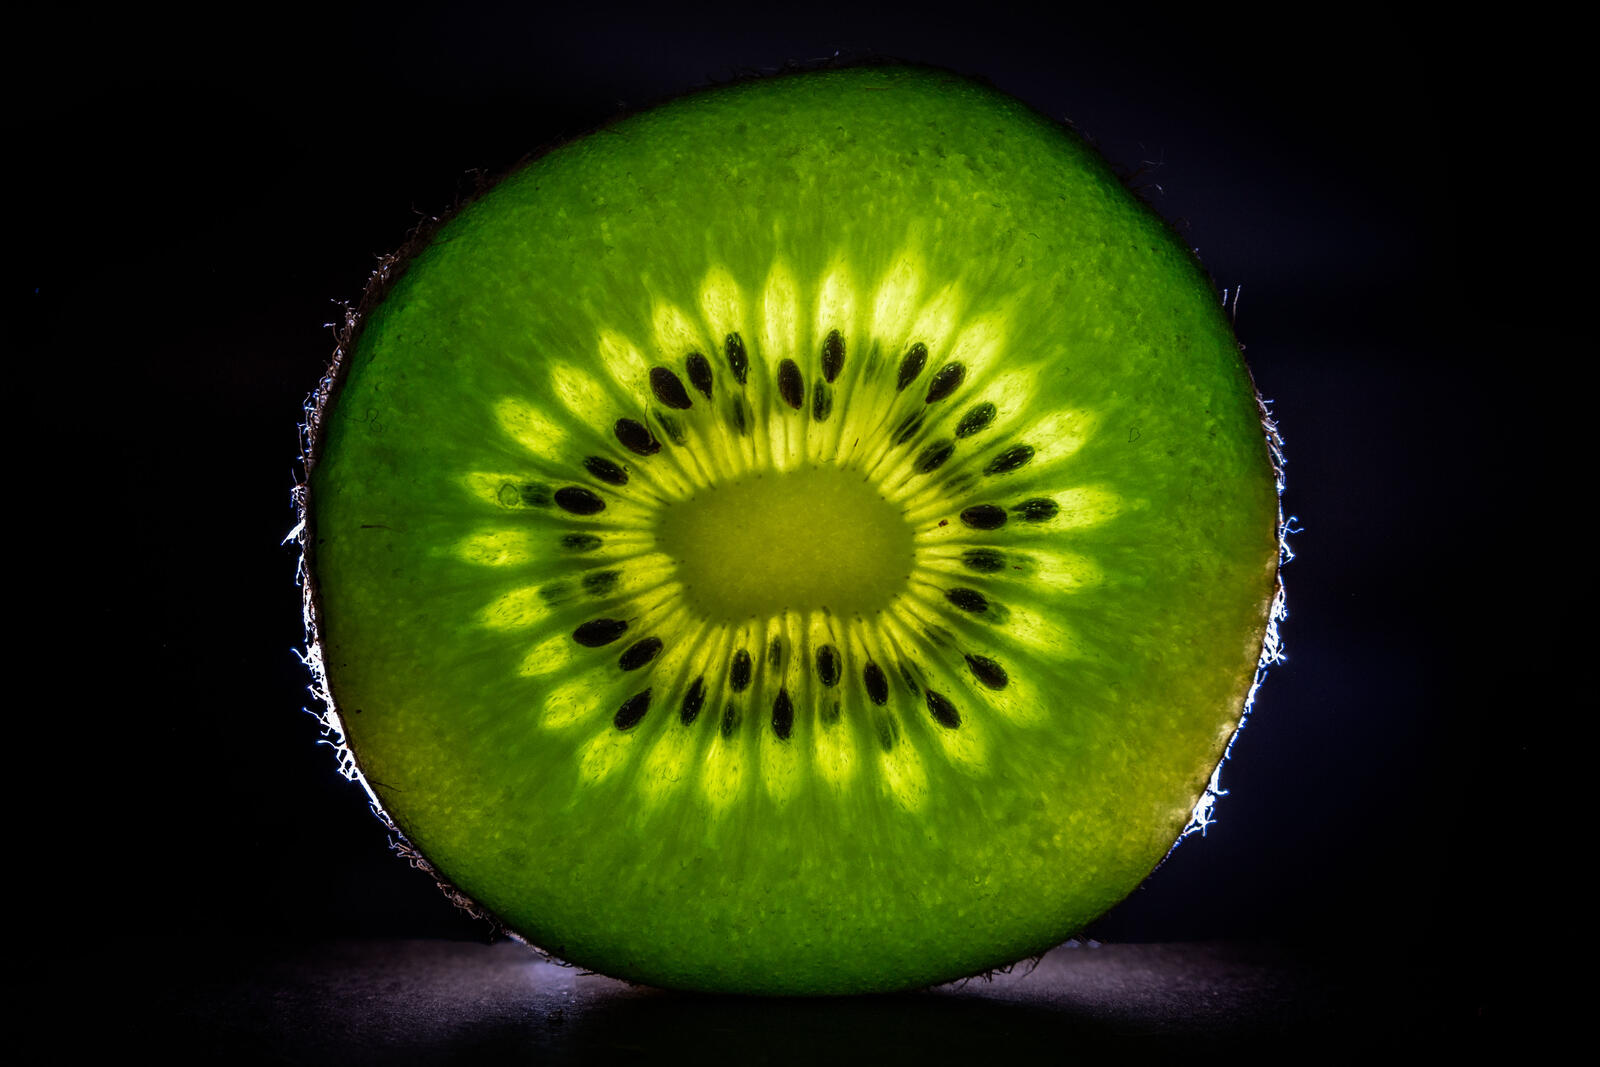 Free photo Green kiwi slice on black background